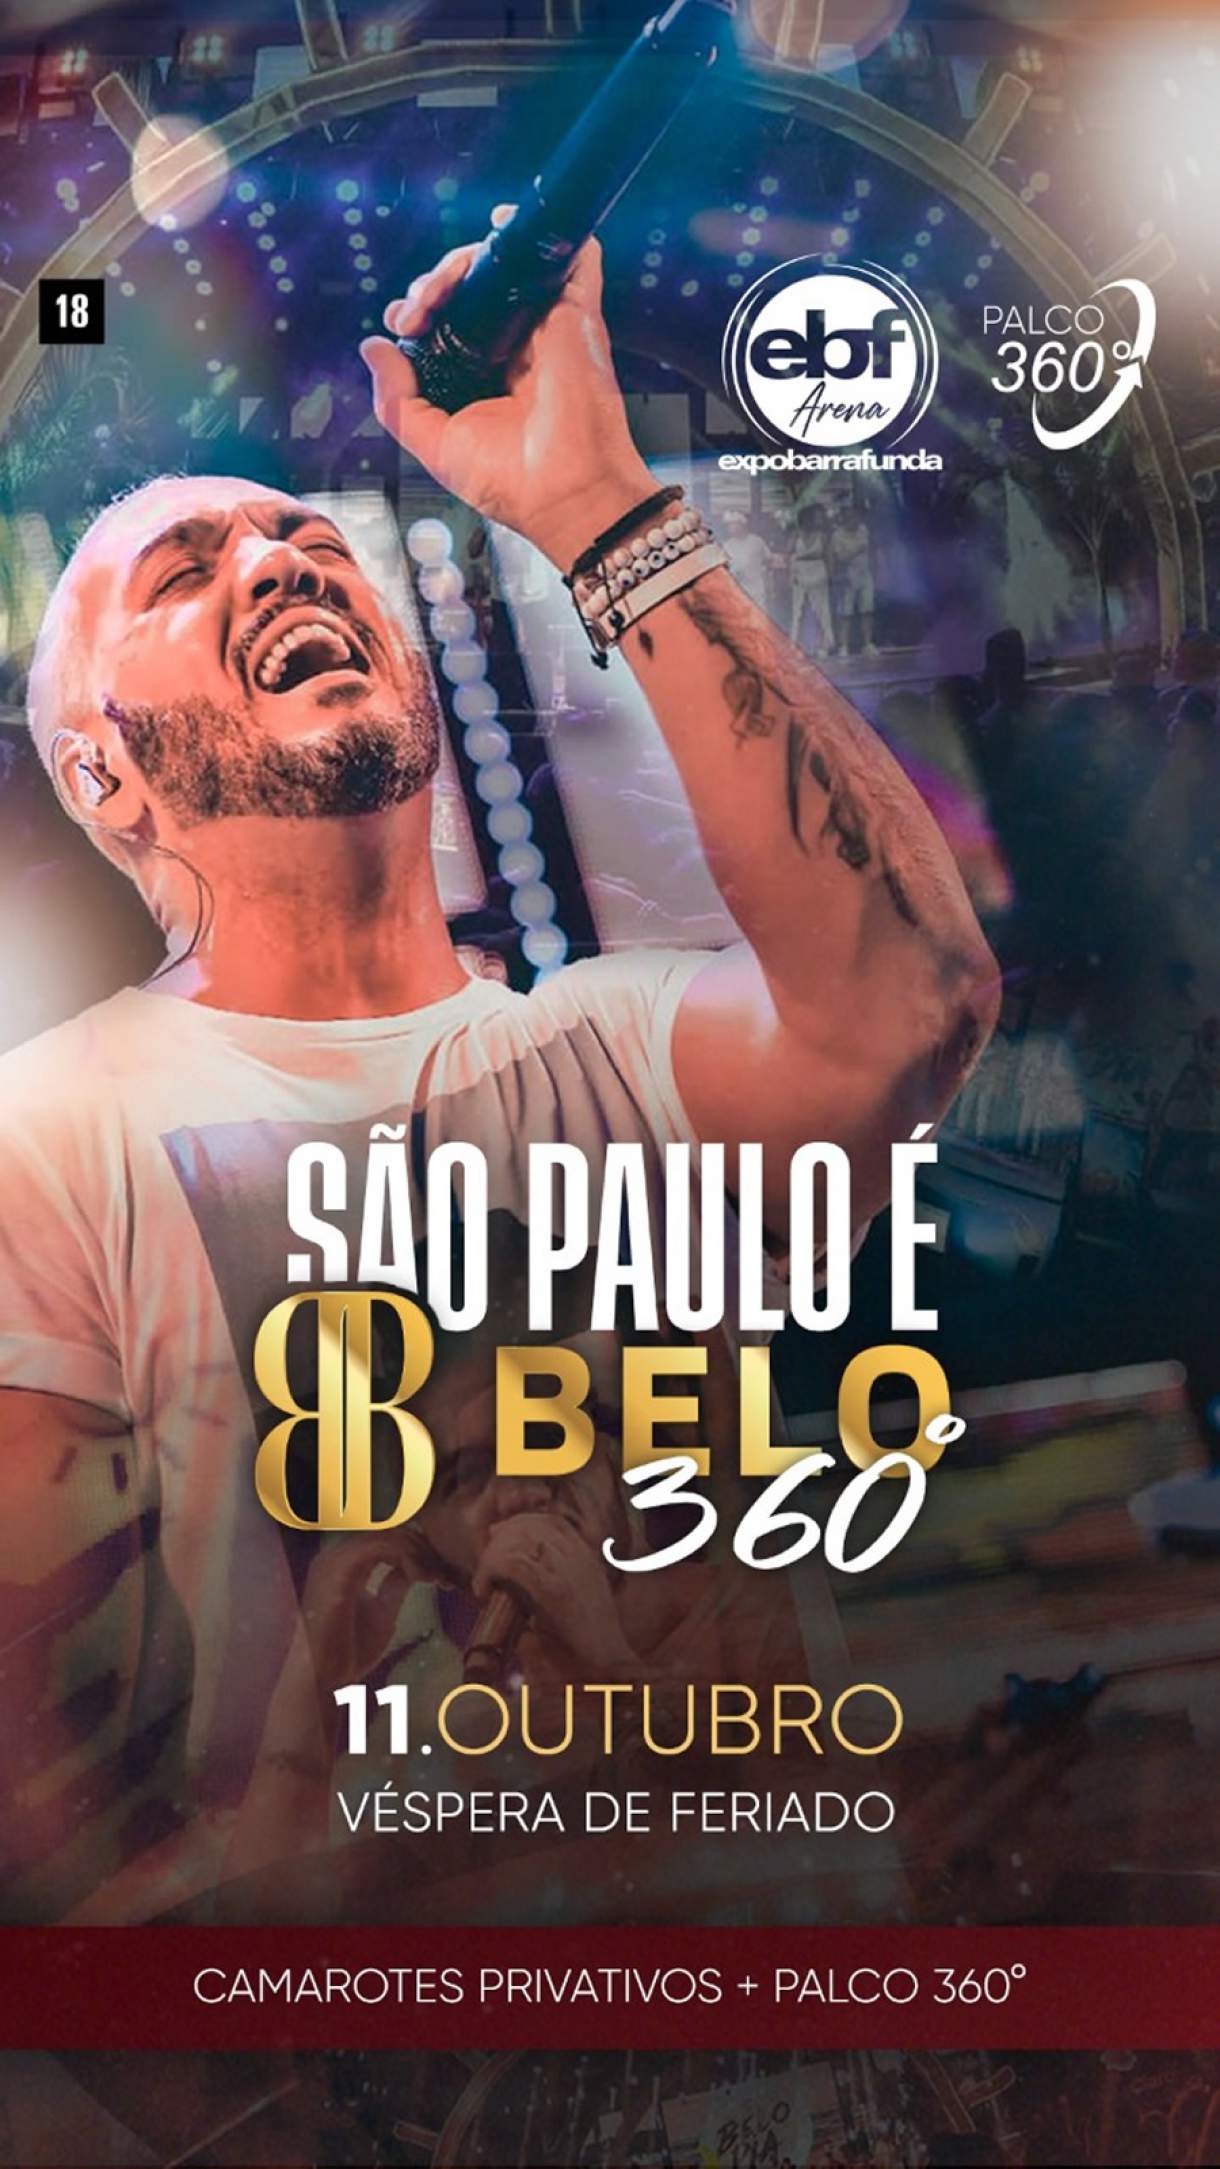 Só Pra Contrariar fará três shows em São Paulo